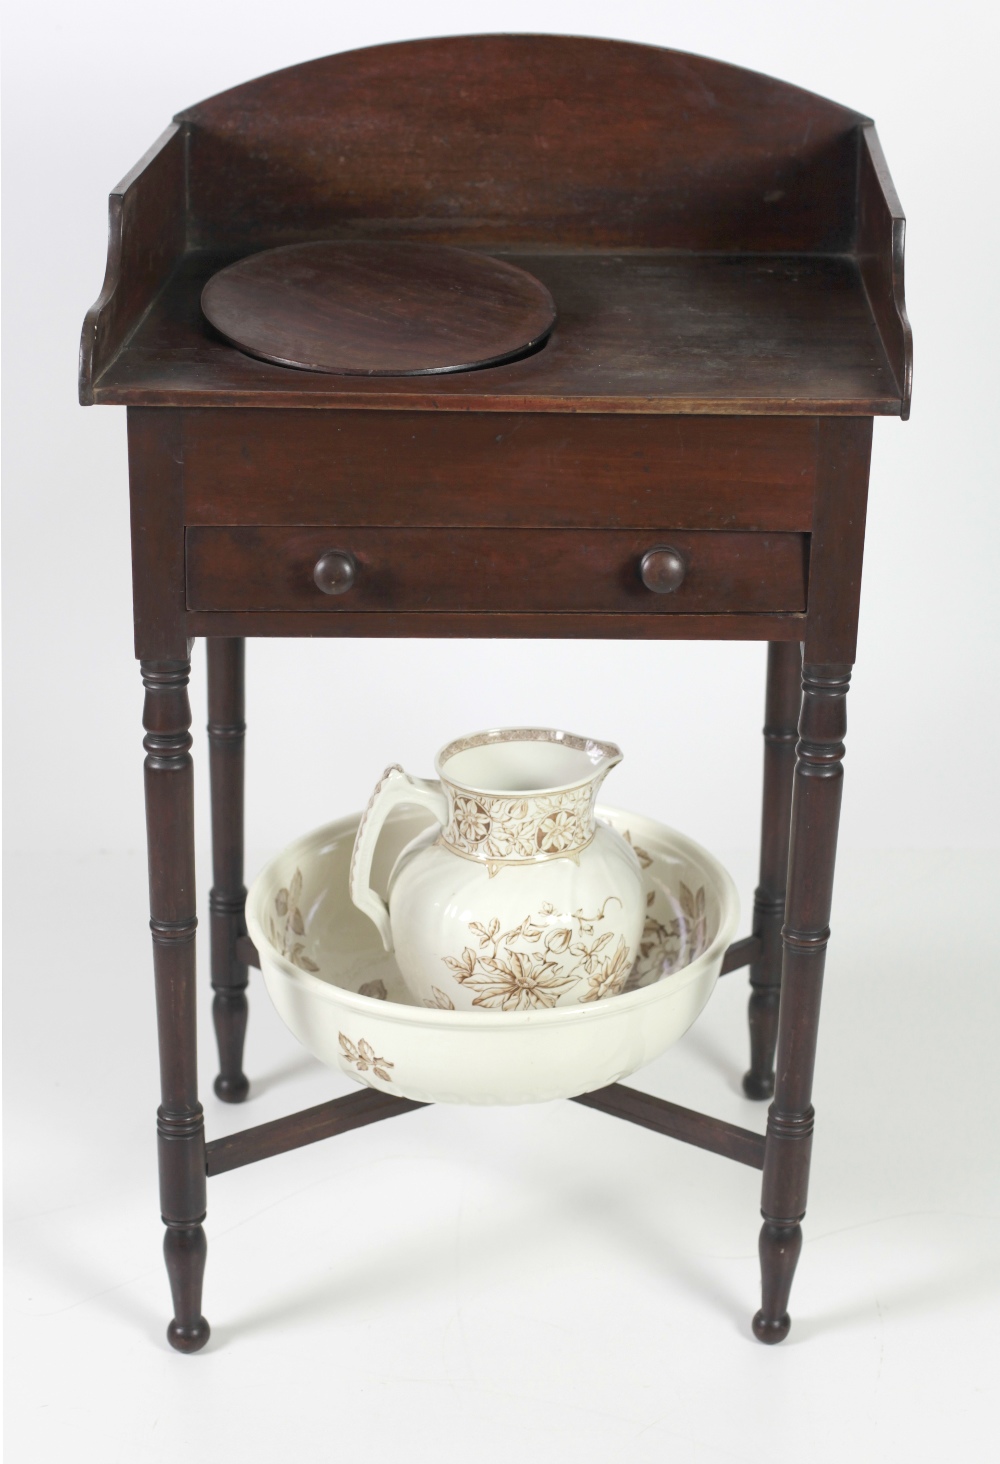 A 19th Century mahogany Washstand,